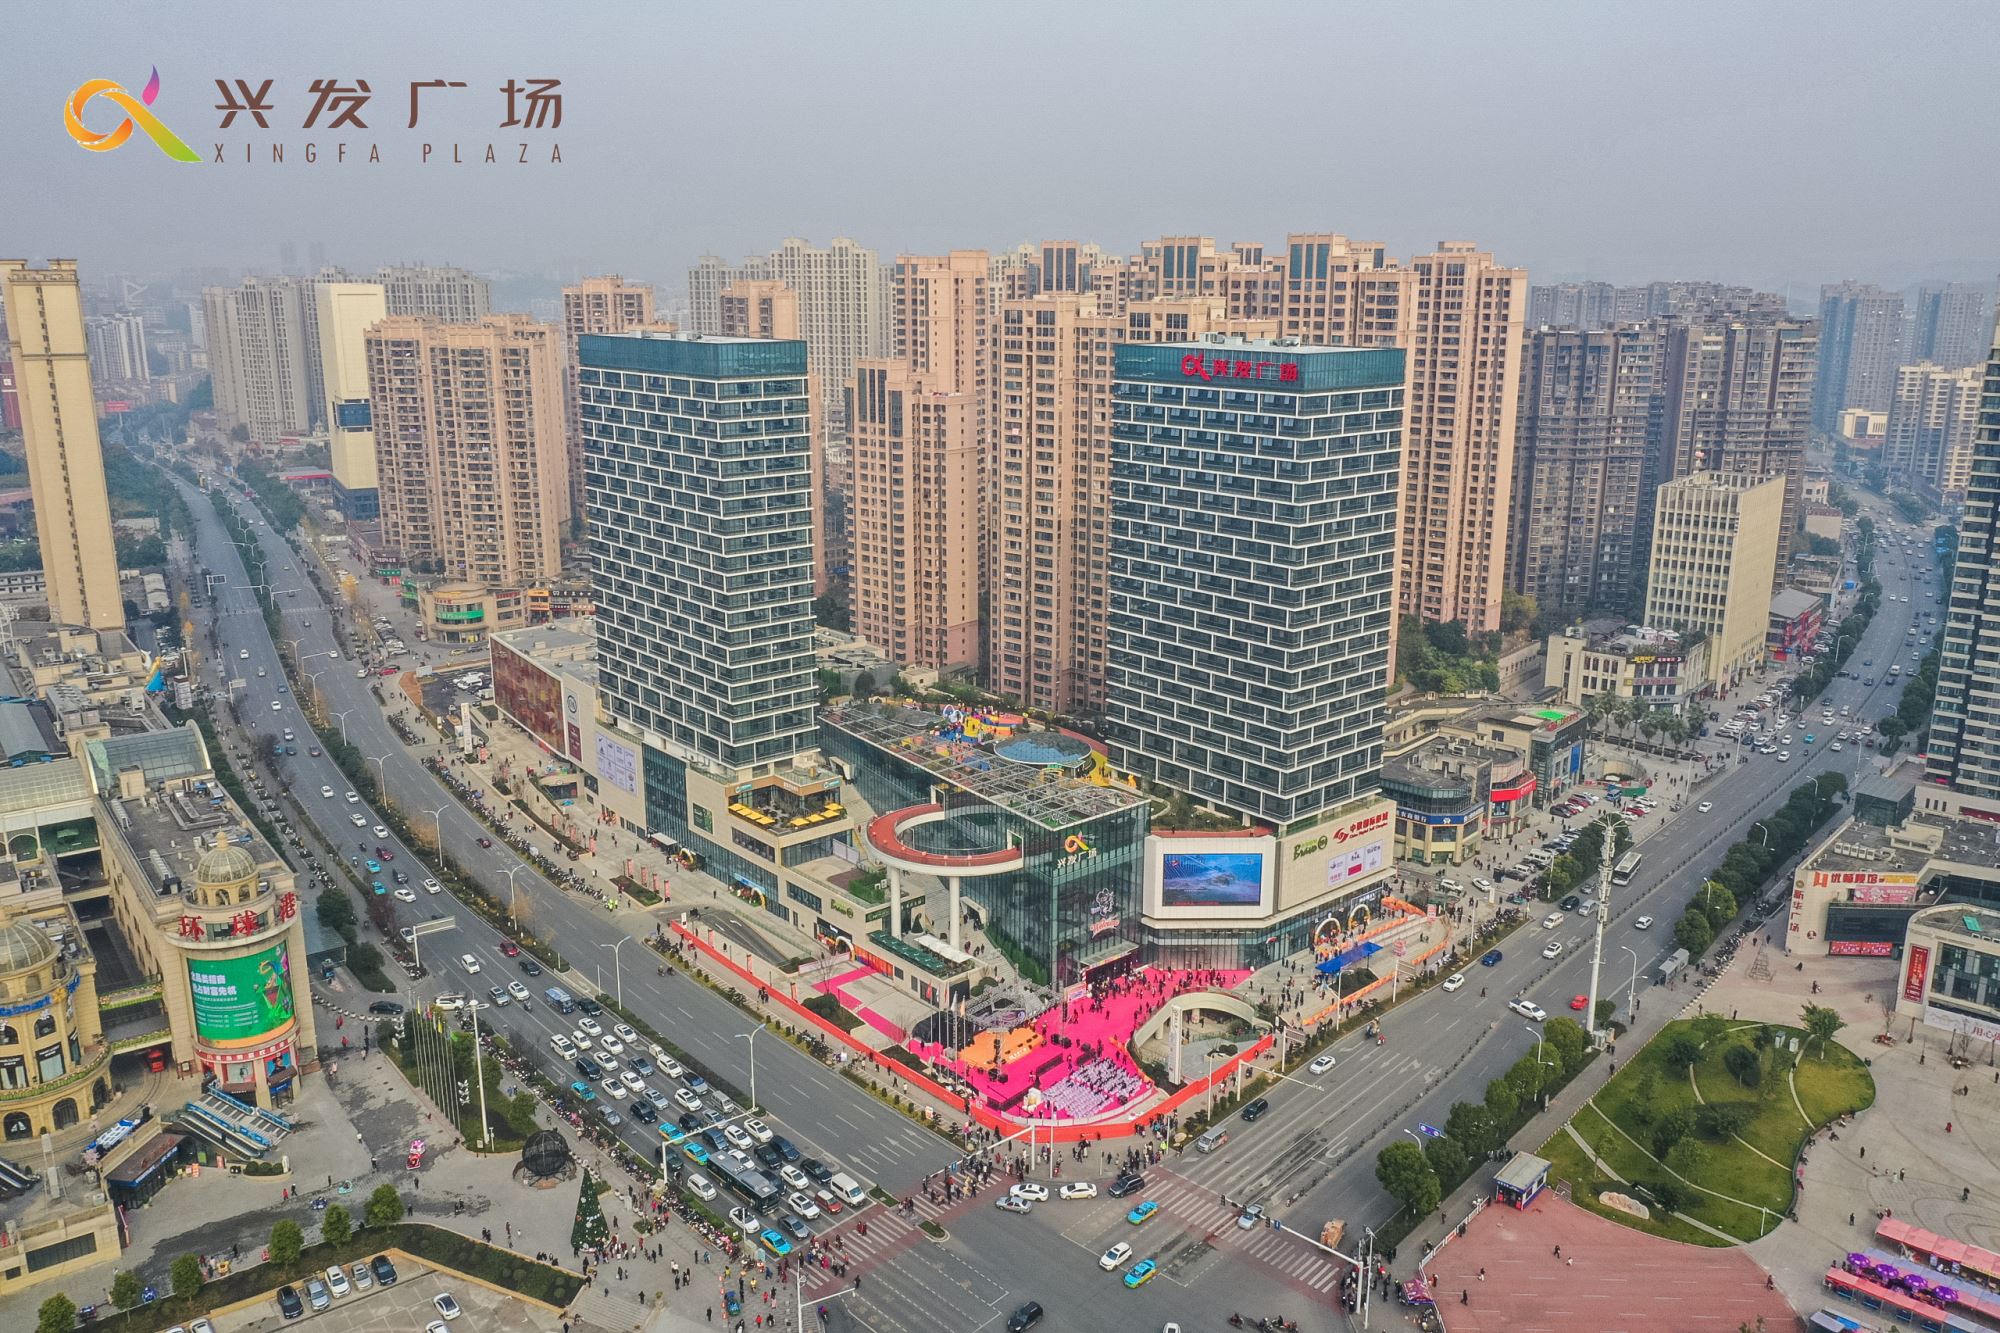 宜昌兴发广场位于伍家岗区中南路与城东大道交汇处,作为宜昌商业综合